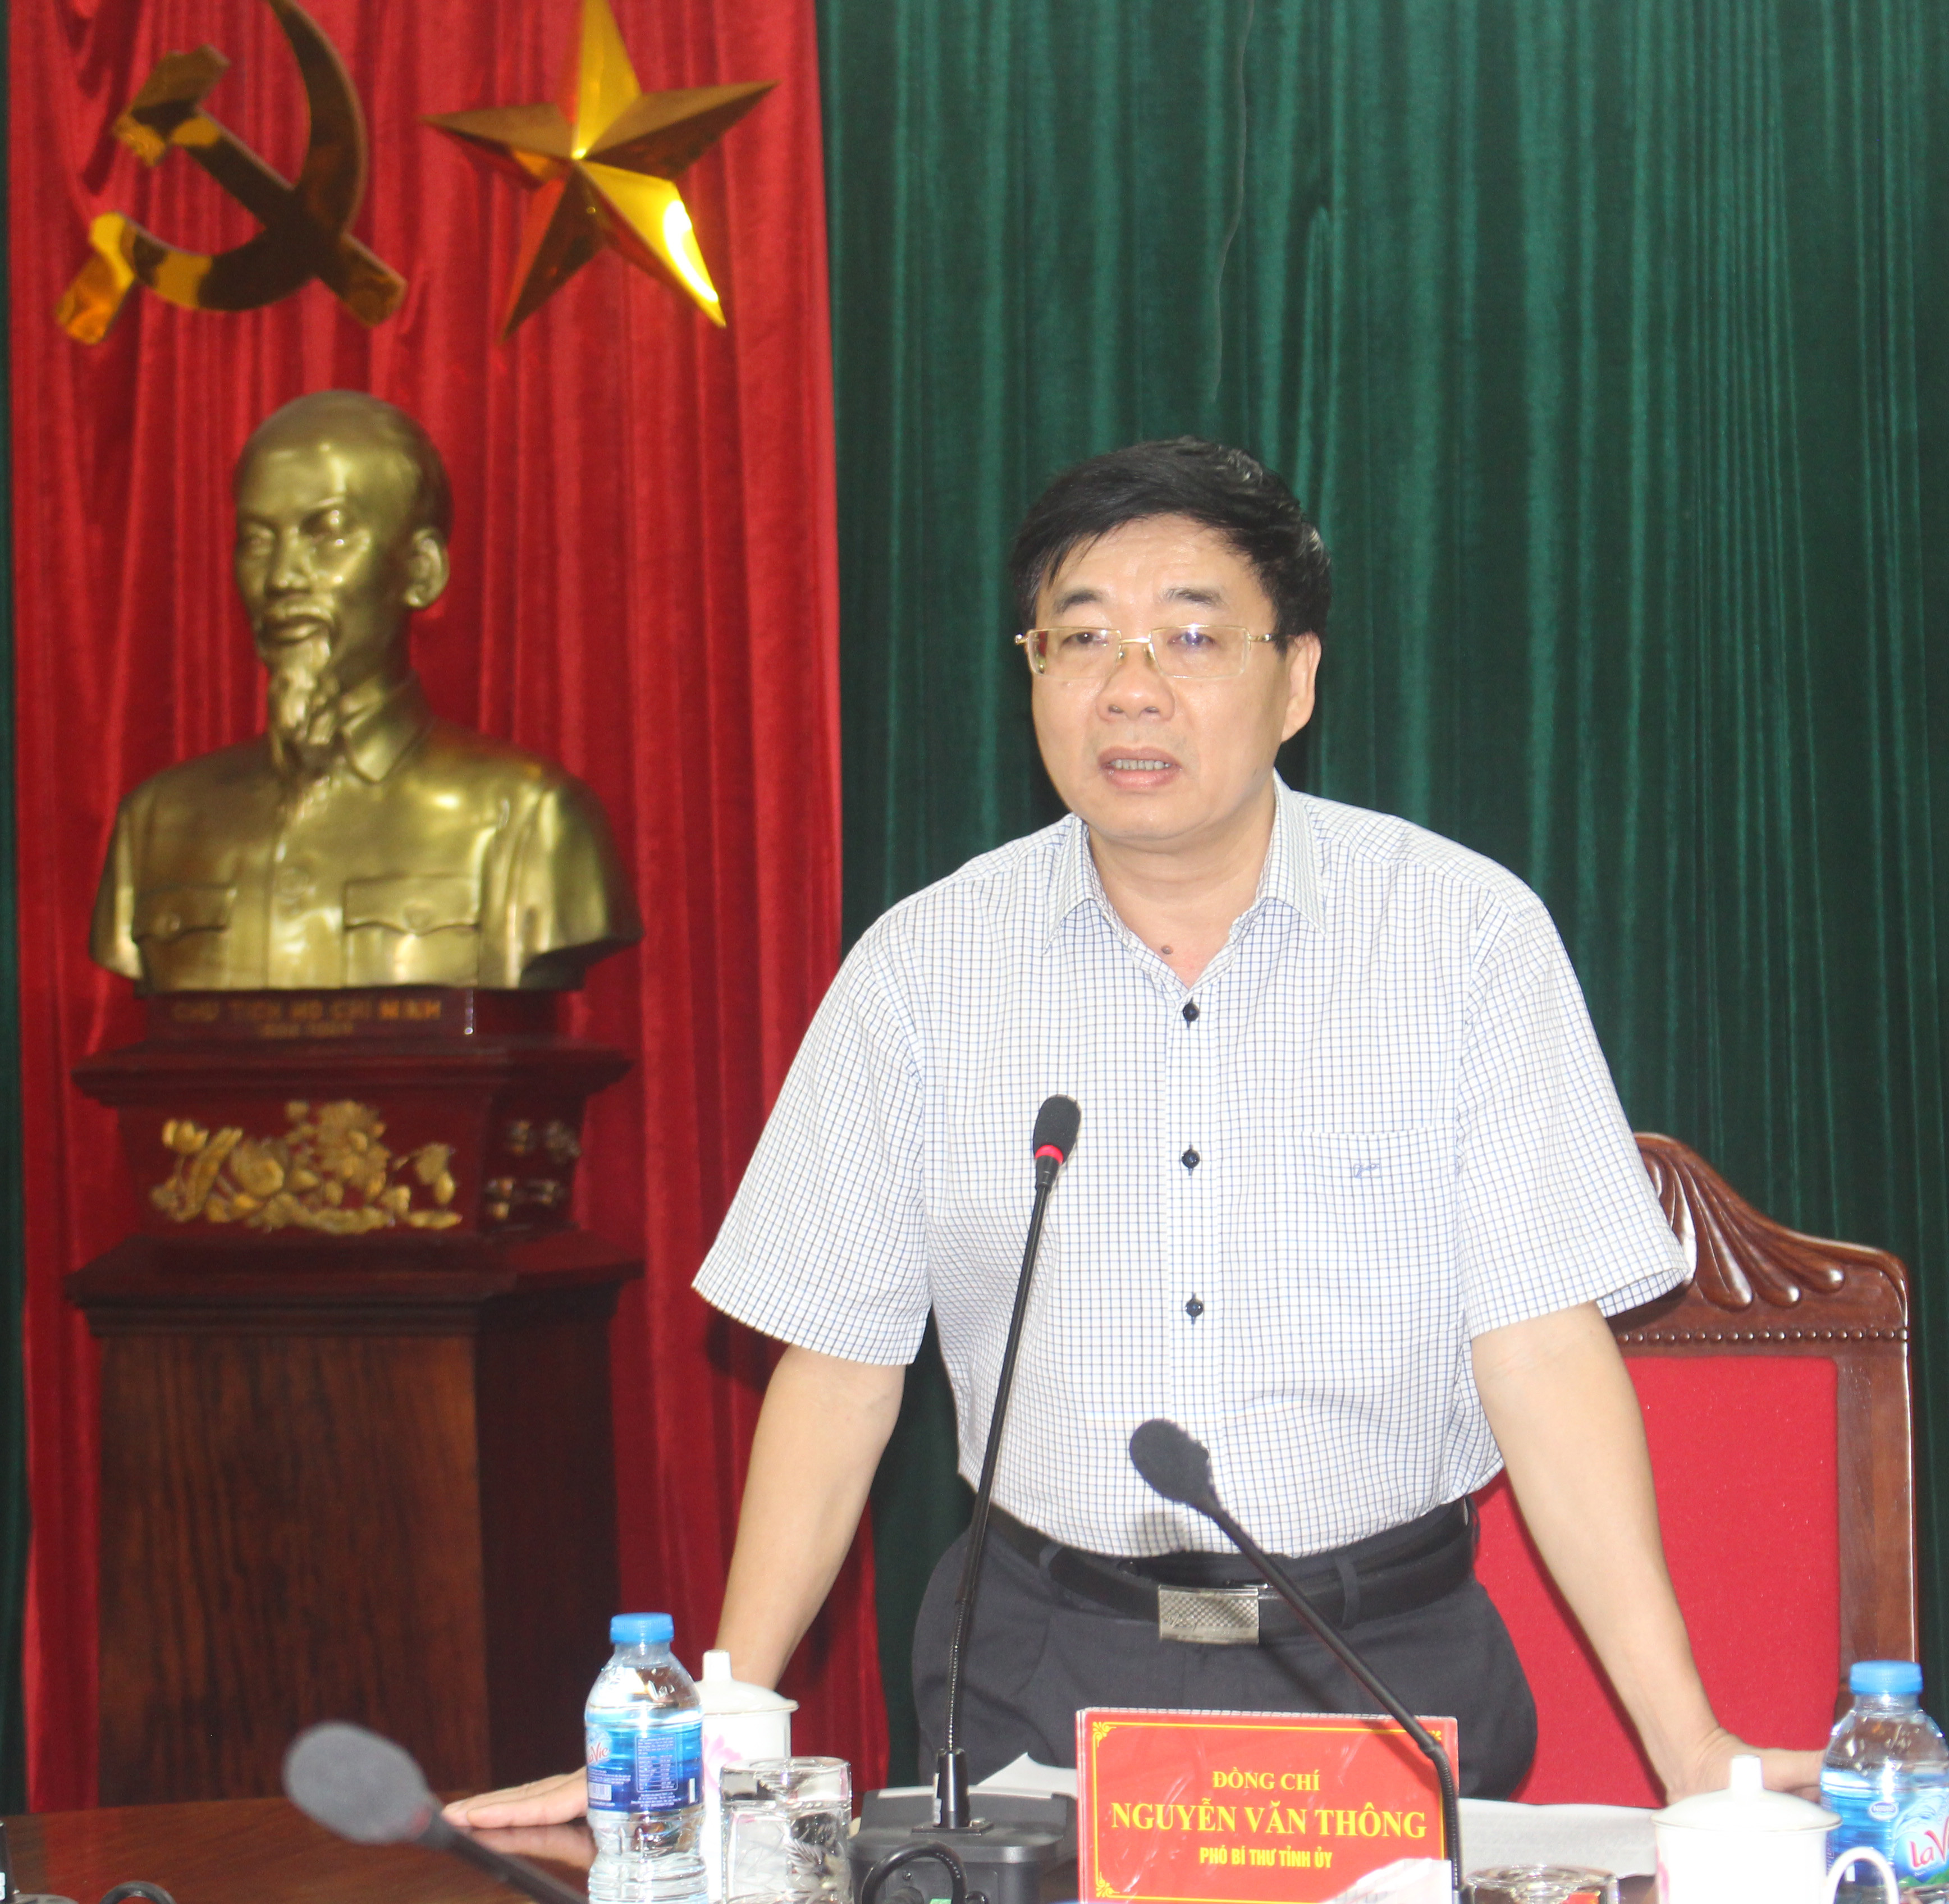 Đồng chí Nguyễn Văn Thông – Phó Bí thư Tỉnh ủy chủ trì hội nghị. Ảnh: Phương Thảo